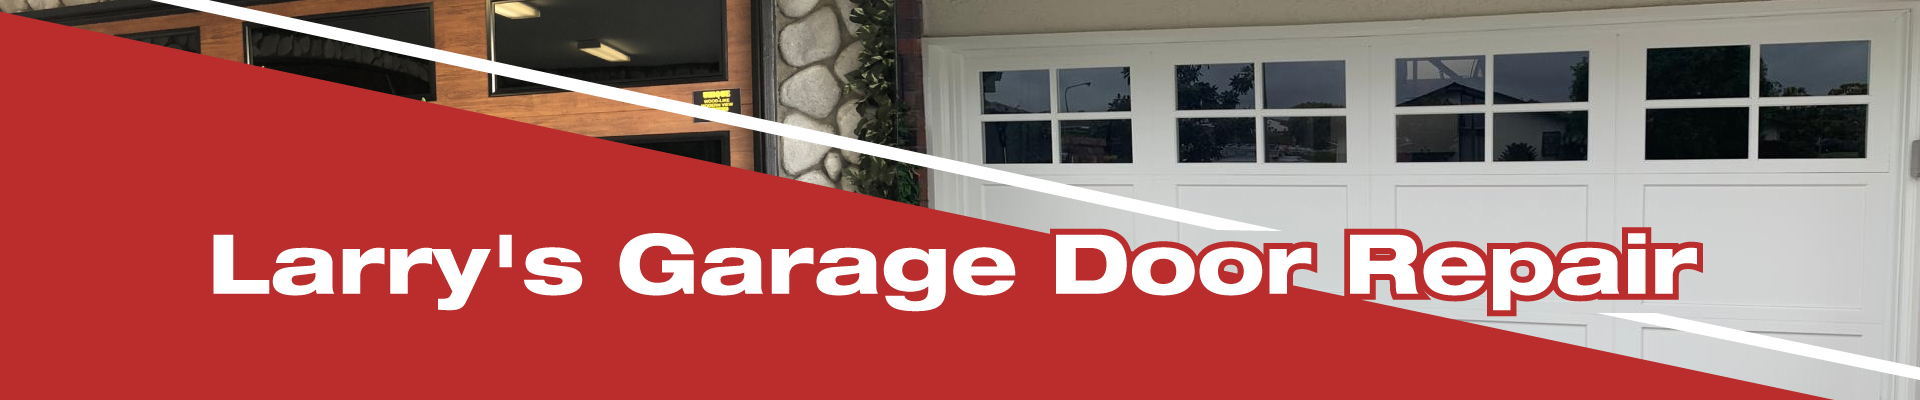 Garage Door Repair Clovis